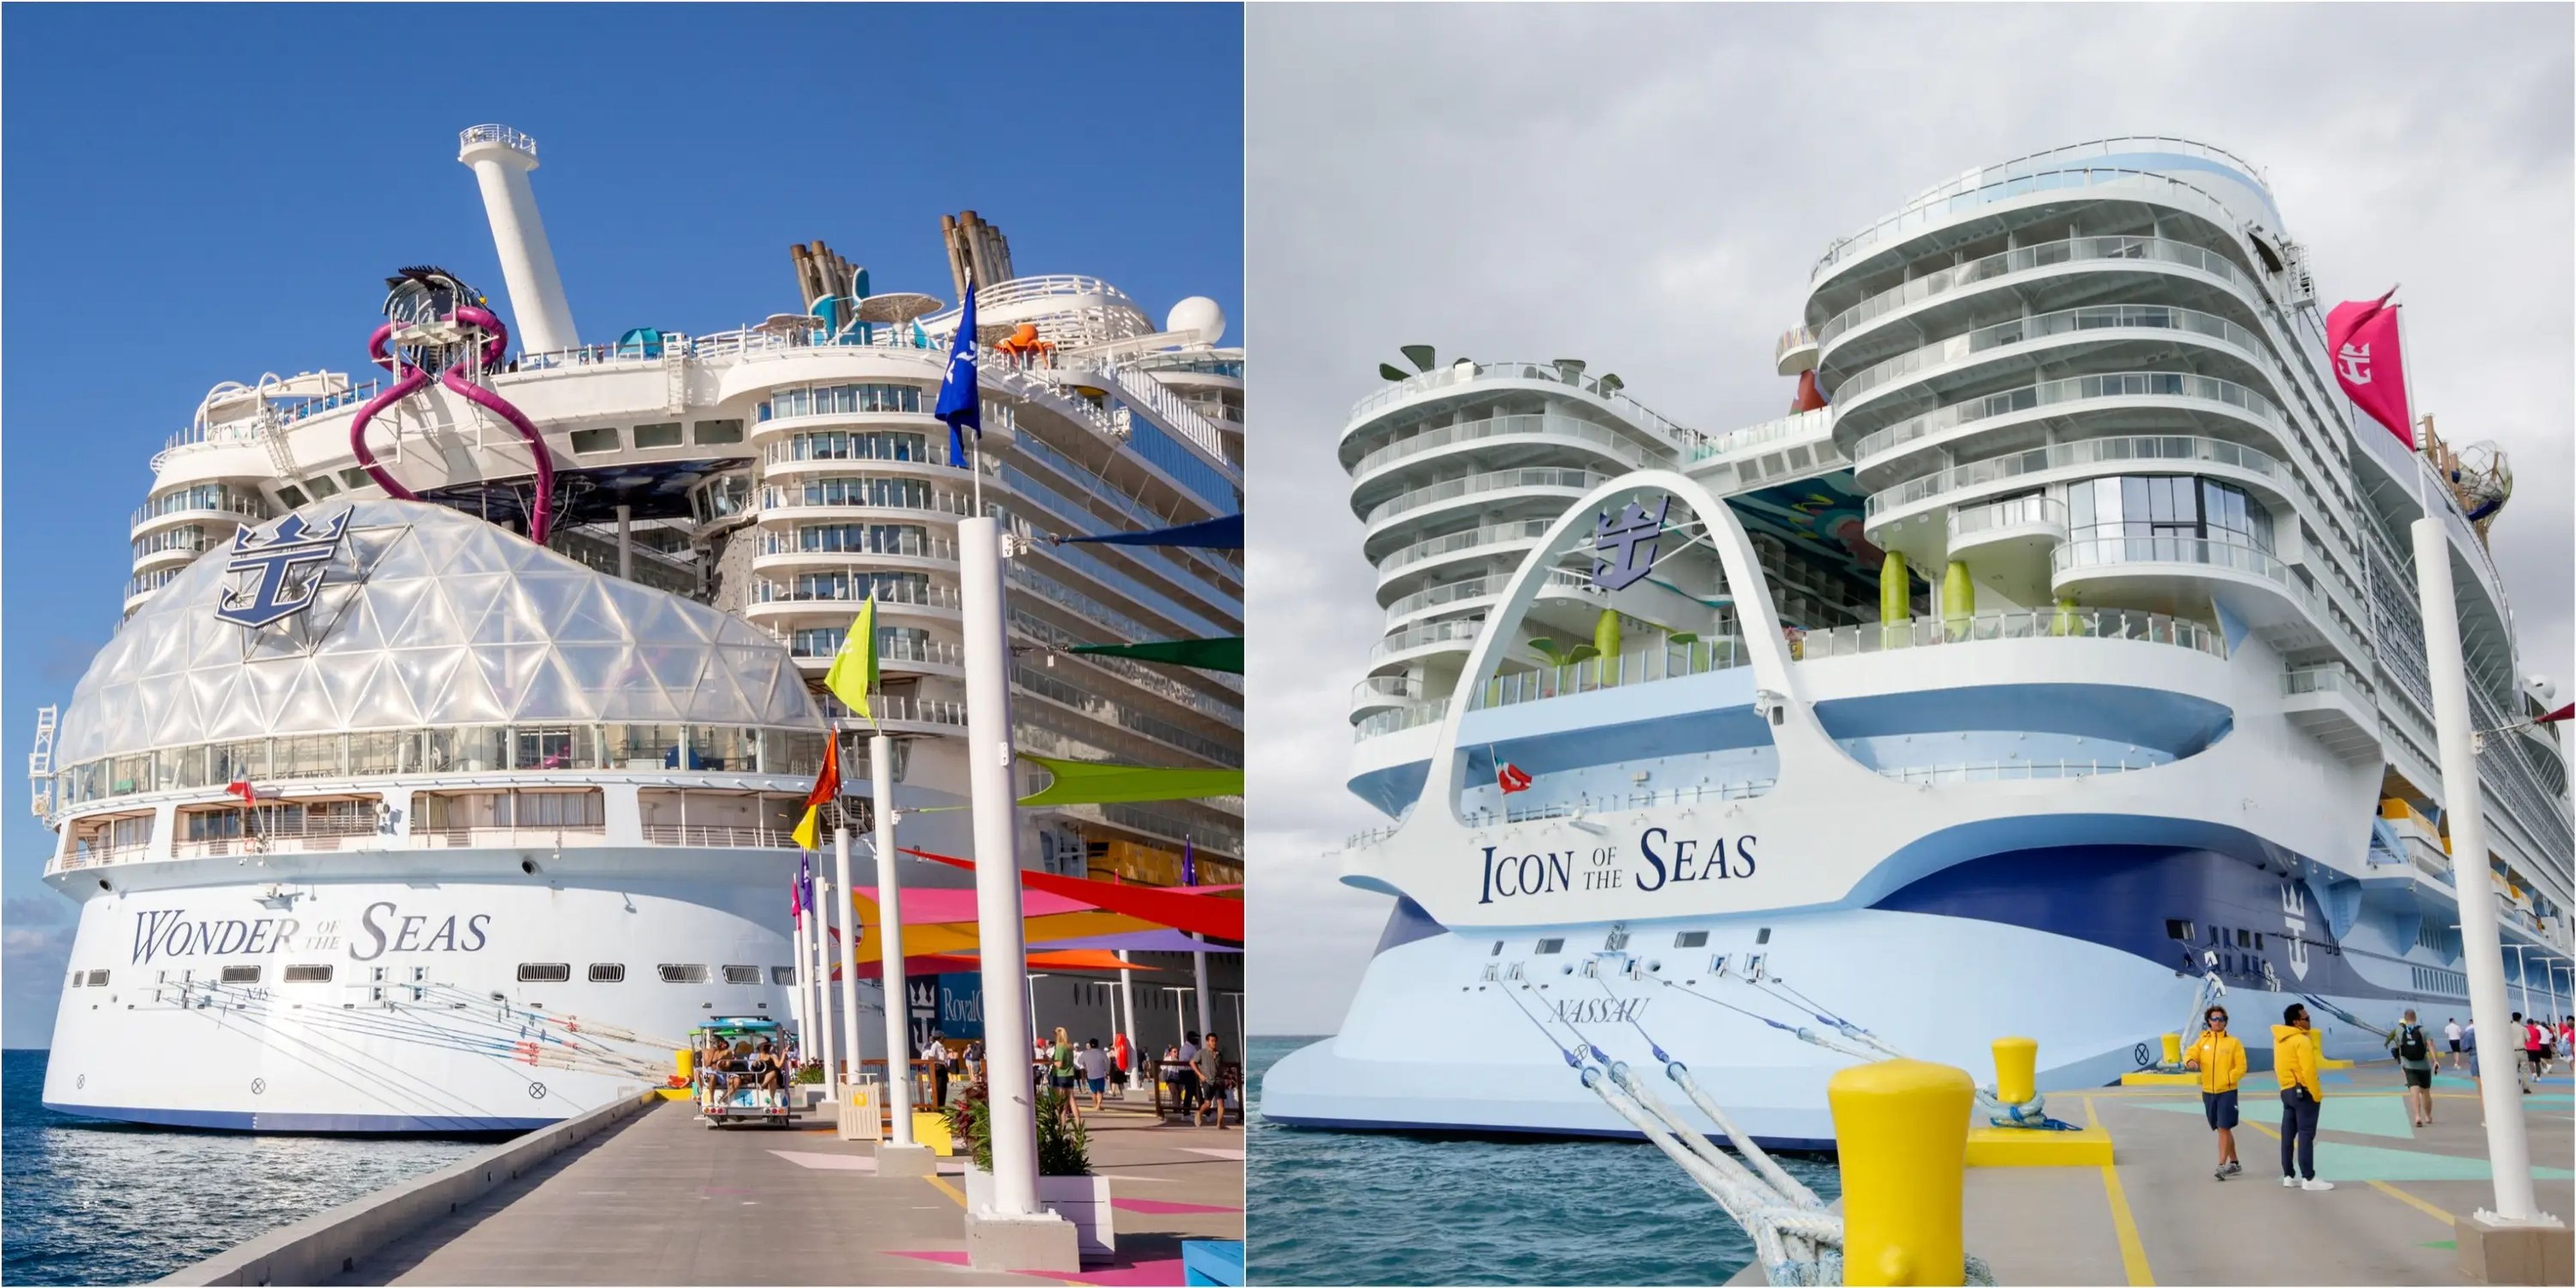 El Wonder of the Seas (izquierda) y el Icon of the Seas (derecha) atracados en Perfect Day at CocoCay.